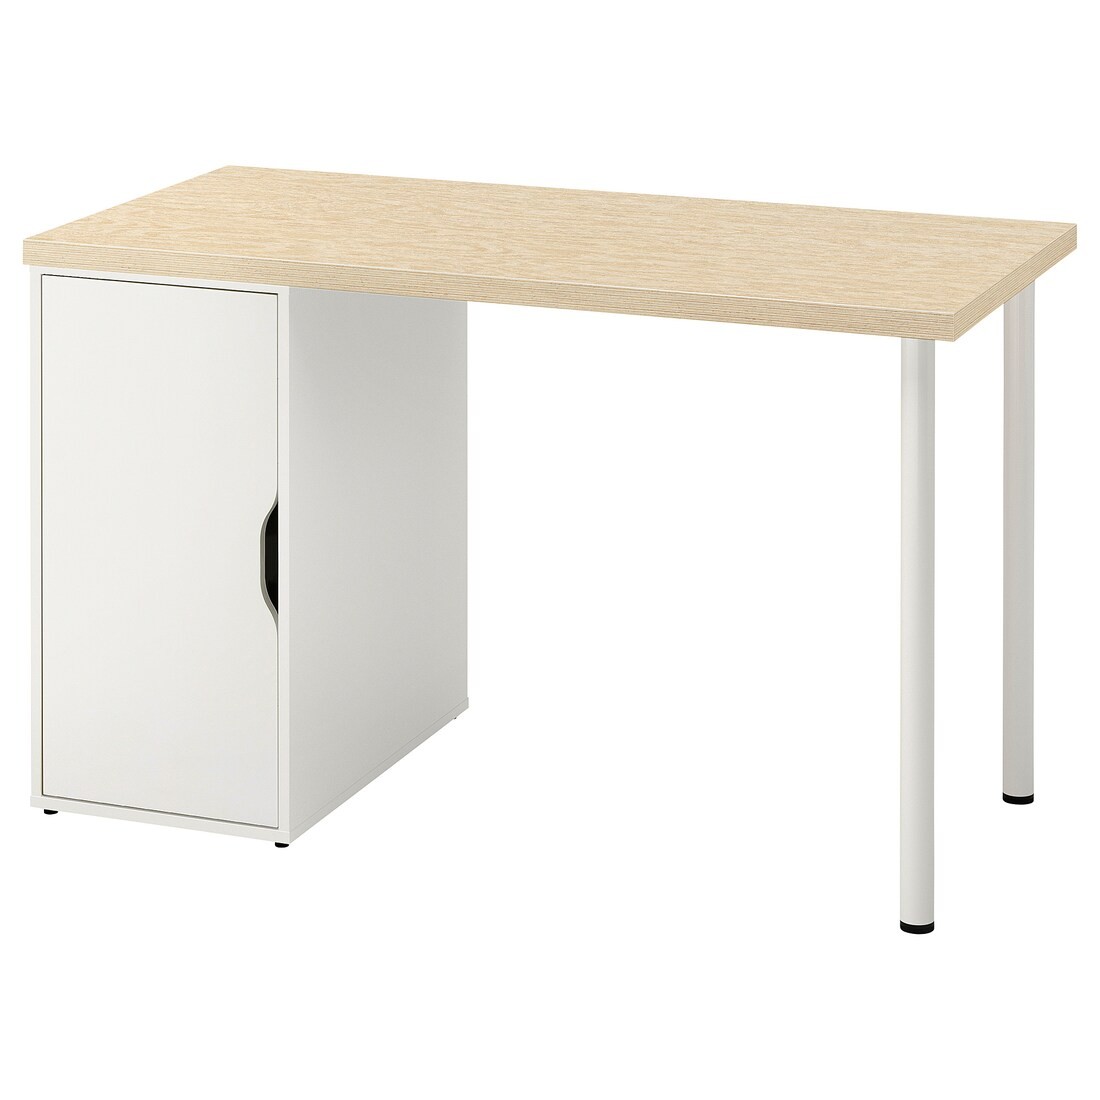 MITTCIRKEL / ALEX Письменный стол, яркий сосновый/белый эффект, 120x60 см